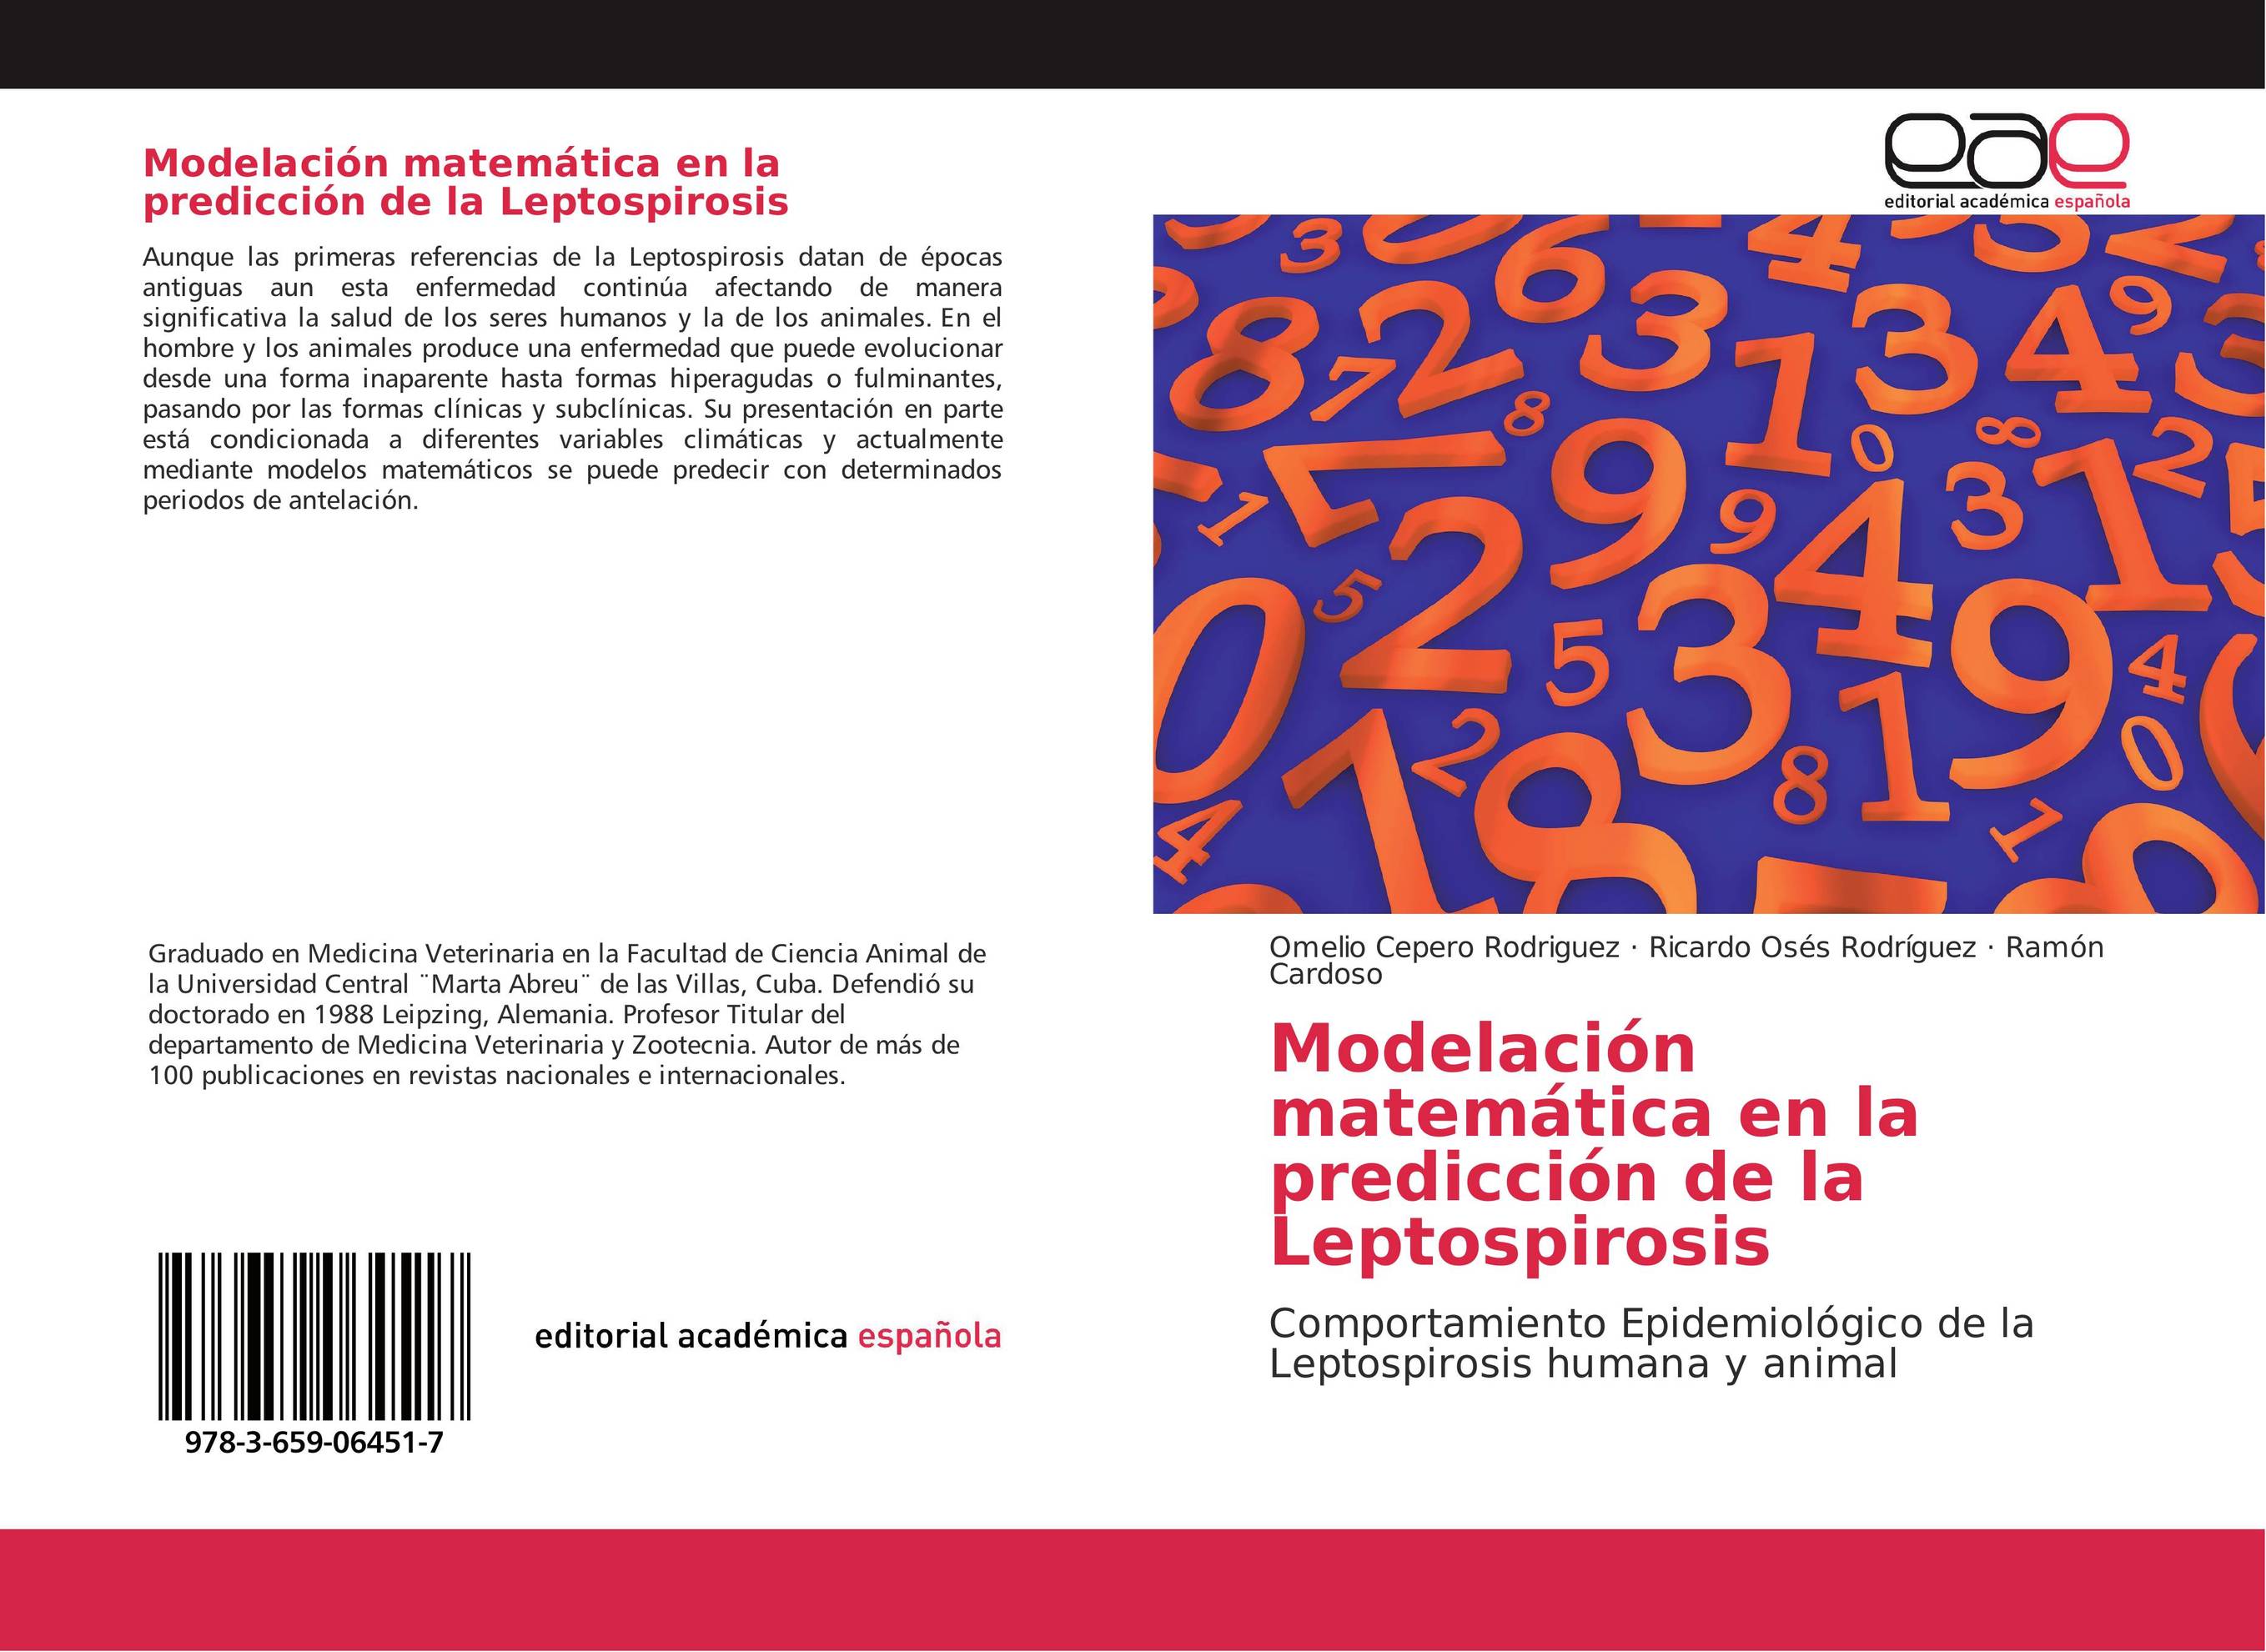 Modelación matemática en la predicción de la Leptospirosis